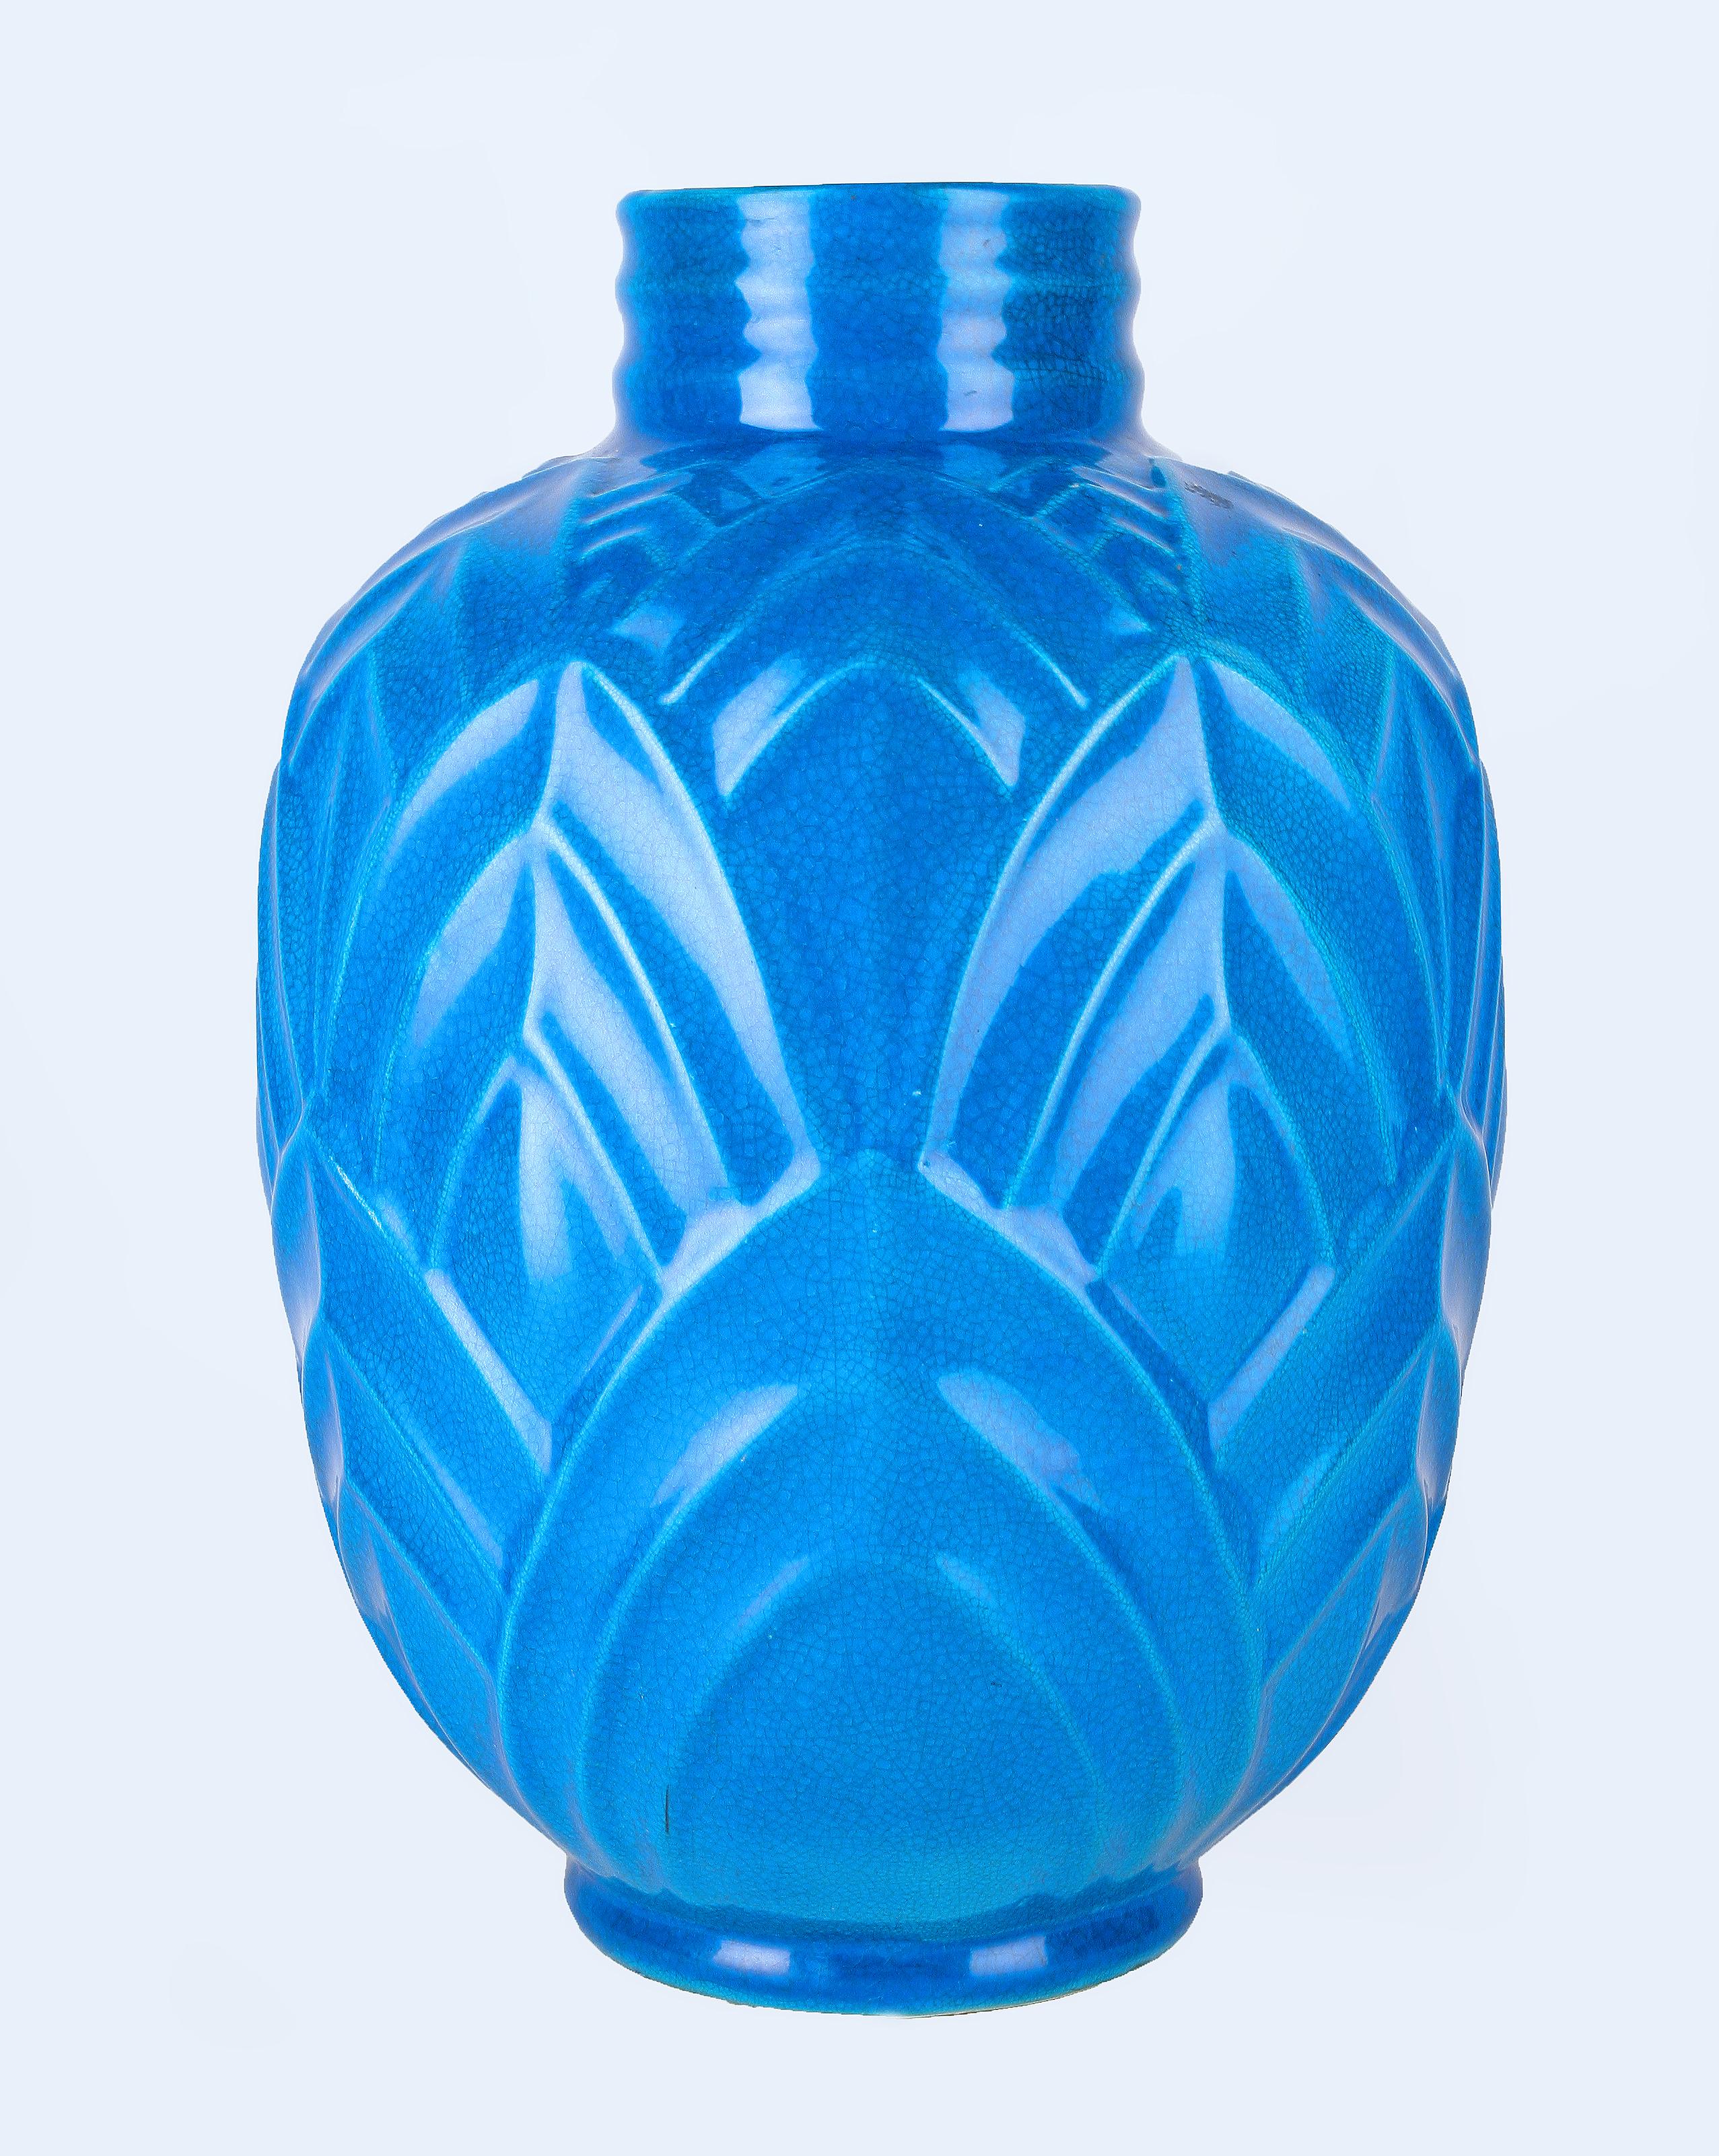 Art Déco Vase aus blau glasierter Keramik/Steingut des französischen Designers Charles Catteau für die belgische Manufaktur Boch Frères Keramis aus dem frühen 20.

Von: Charles Catteau, Boch Frères Keramis, René Lalique (im Stil von)
MATERIAL: